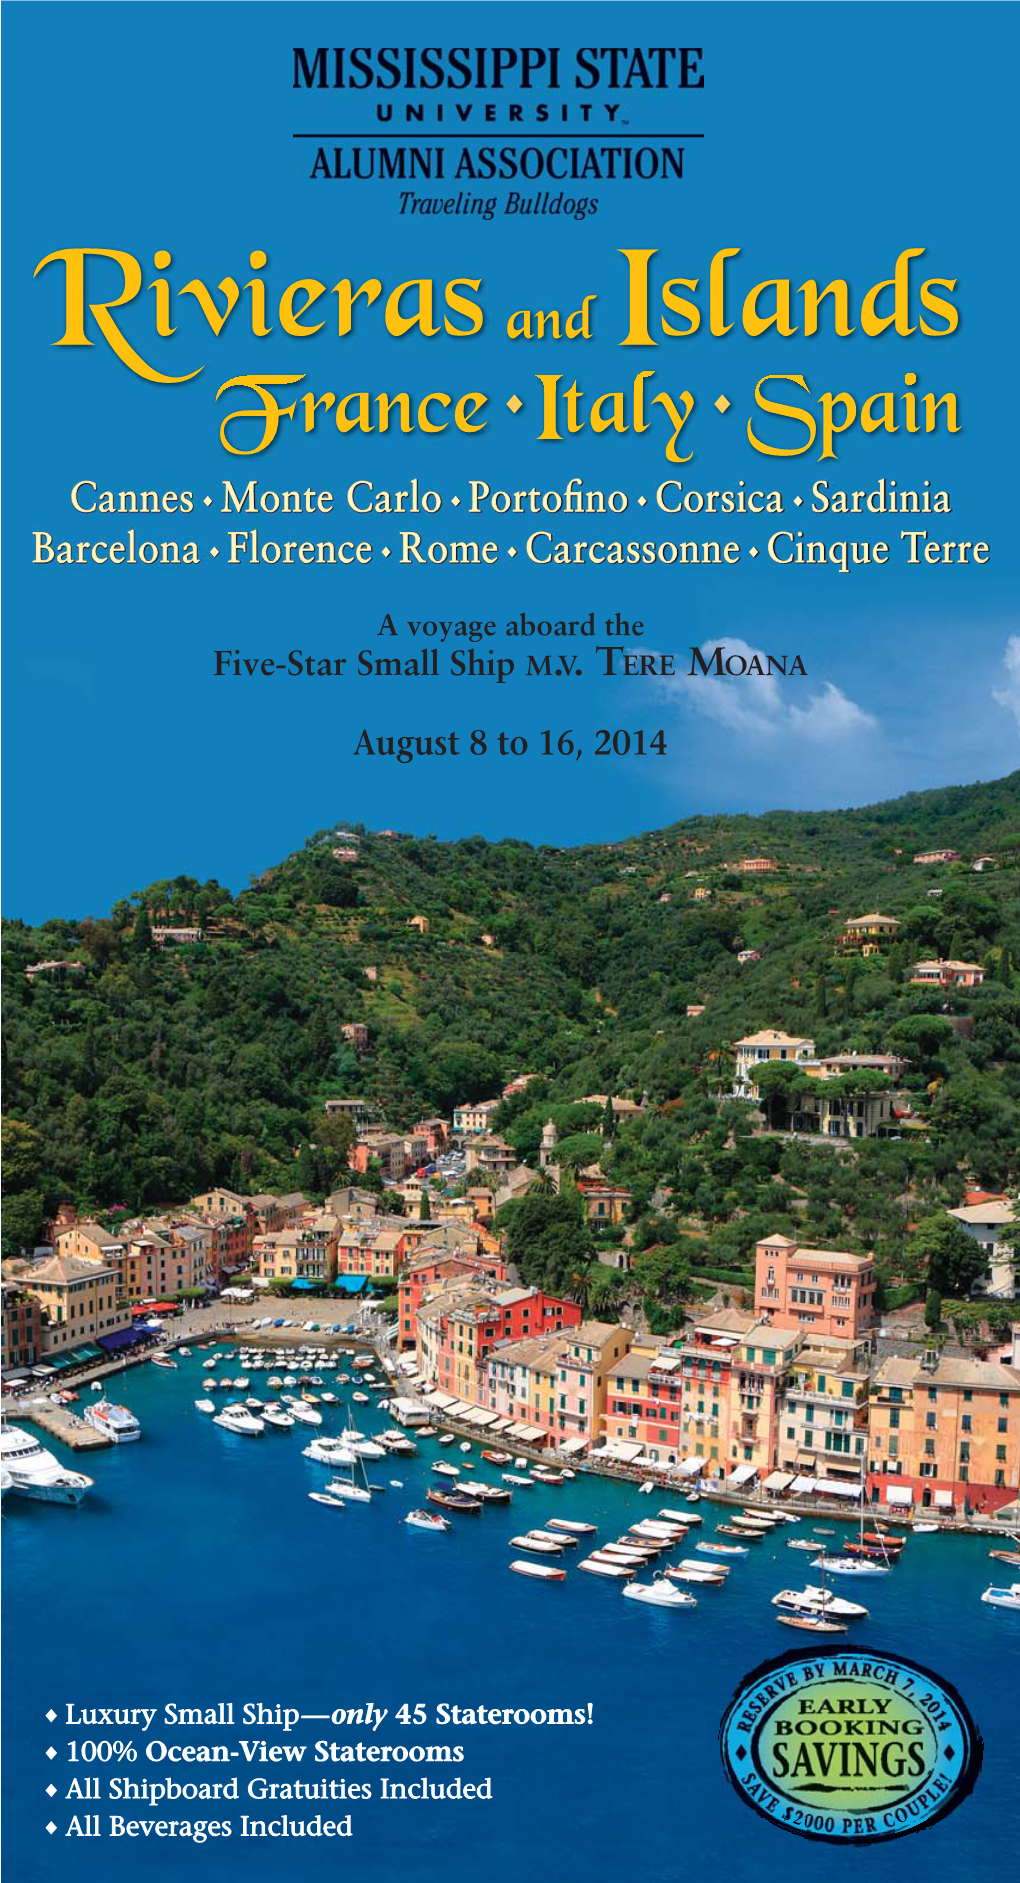 Cannes Monte Carlo Portofino Corsica Sardinia Barcelona